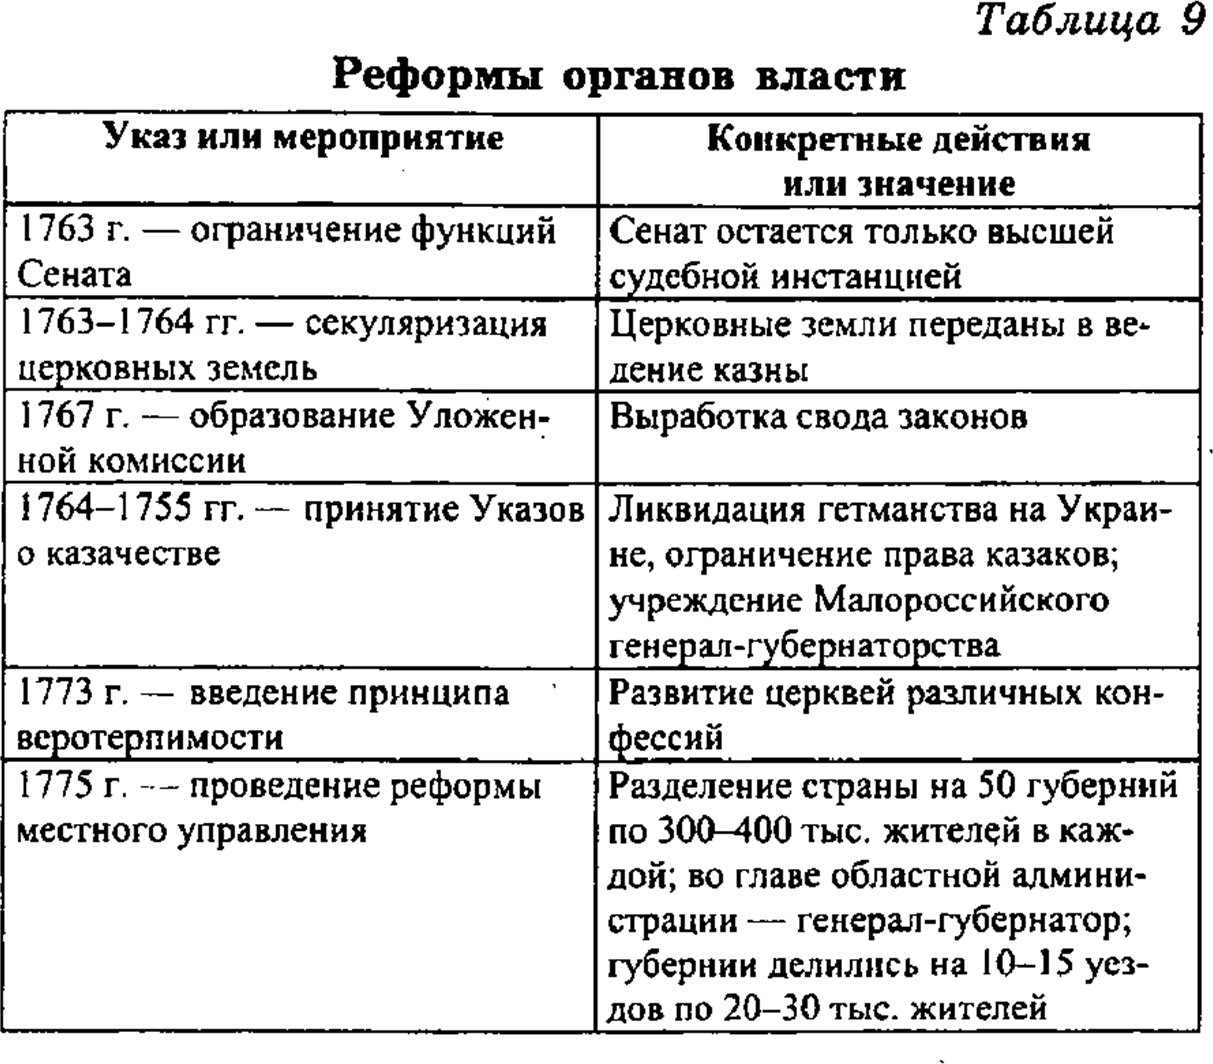 Реформы Екатерины 2 таблица. 801-1811 Гг. реформы таблица. Реформы екатерины второй таблица